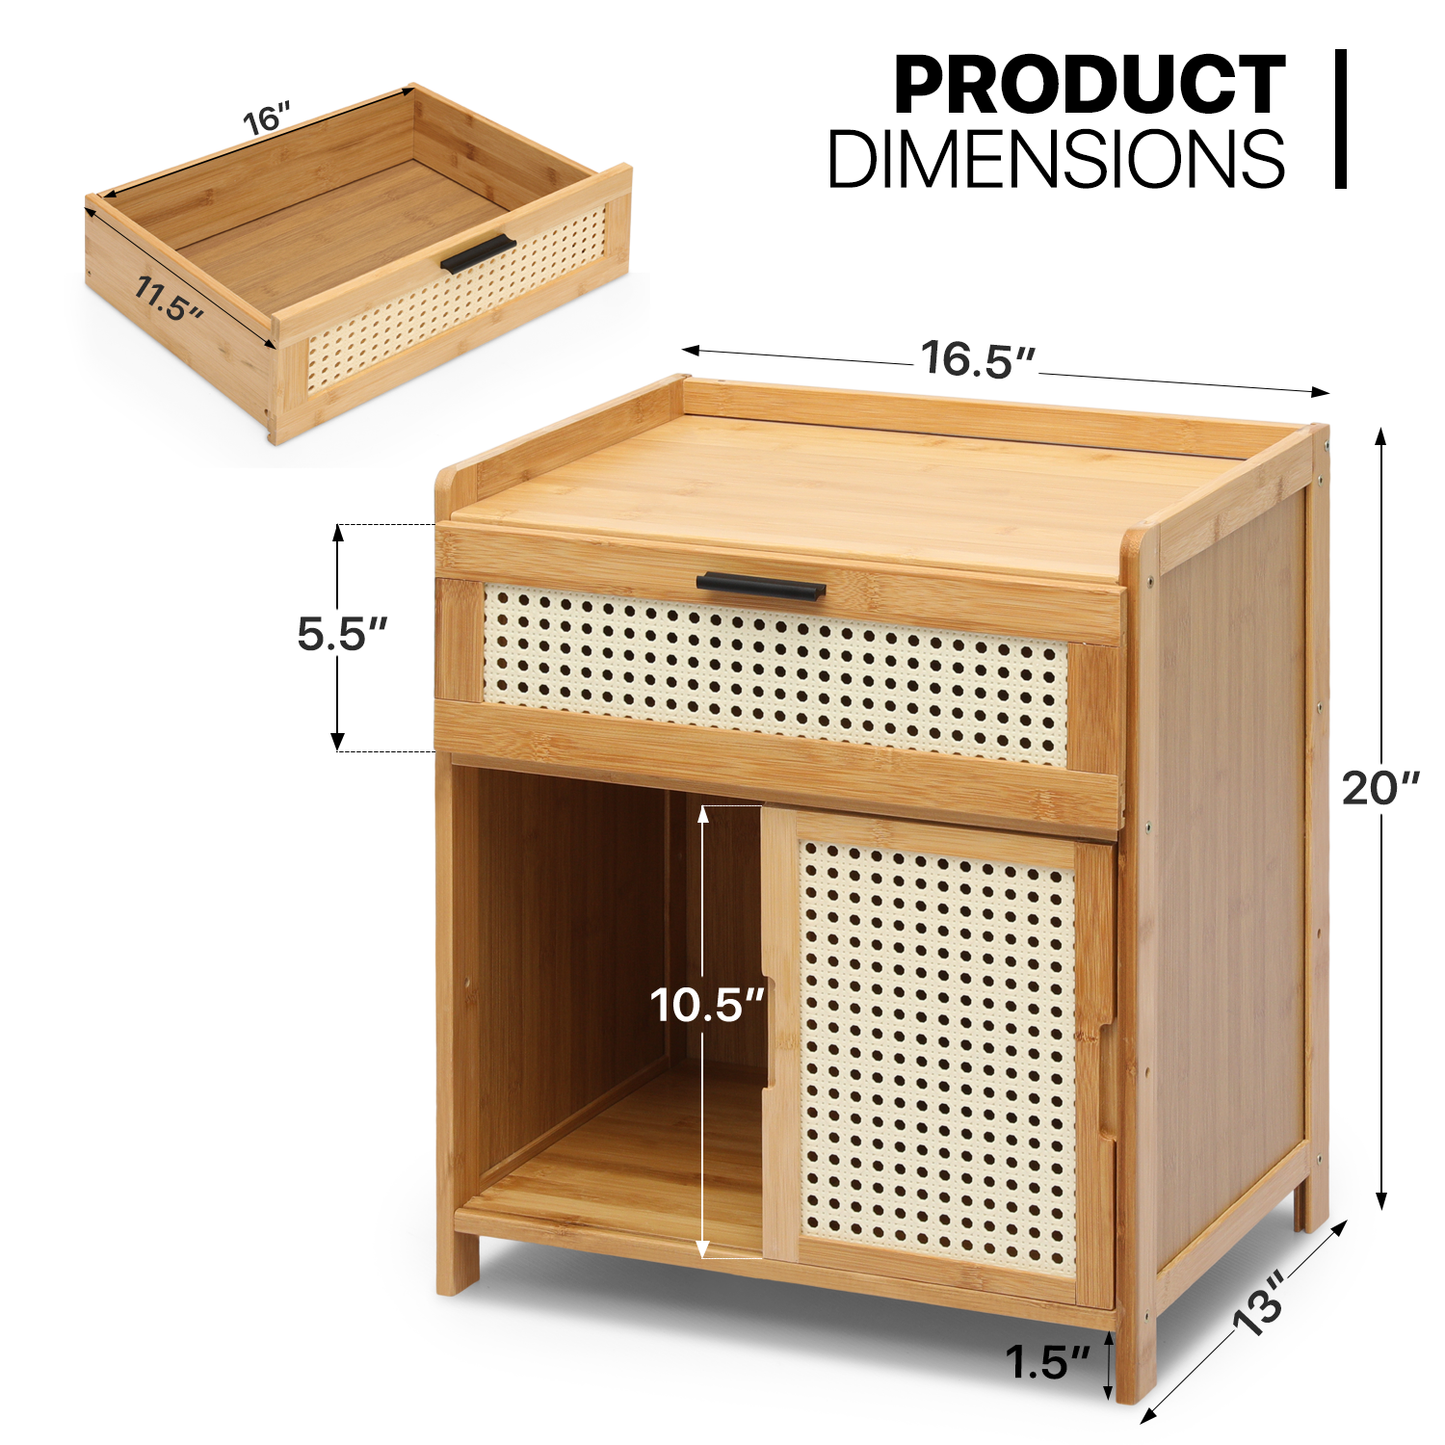 17" Bedside Table / Nightstand - 1 drawer 1 door - Natural